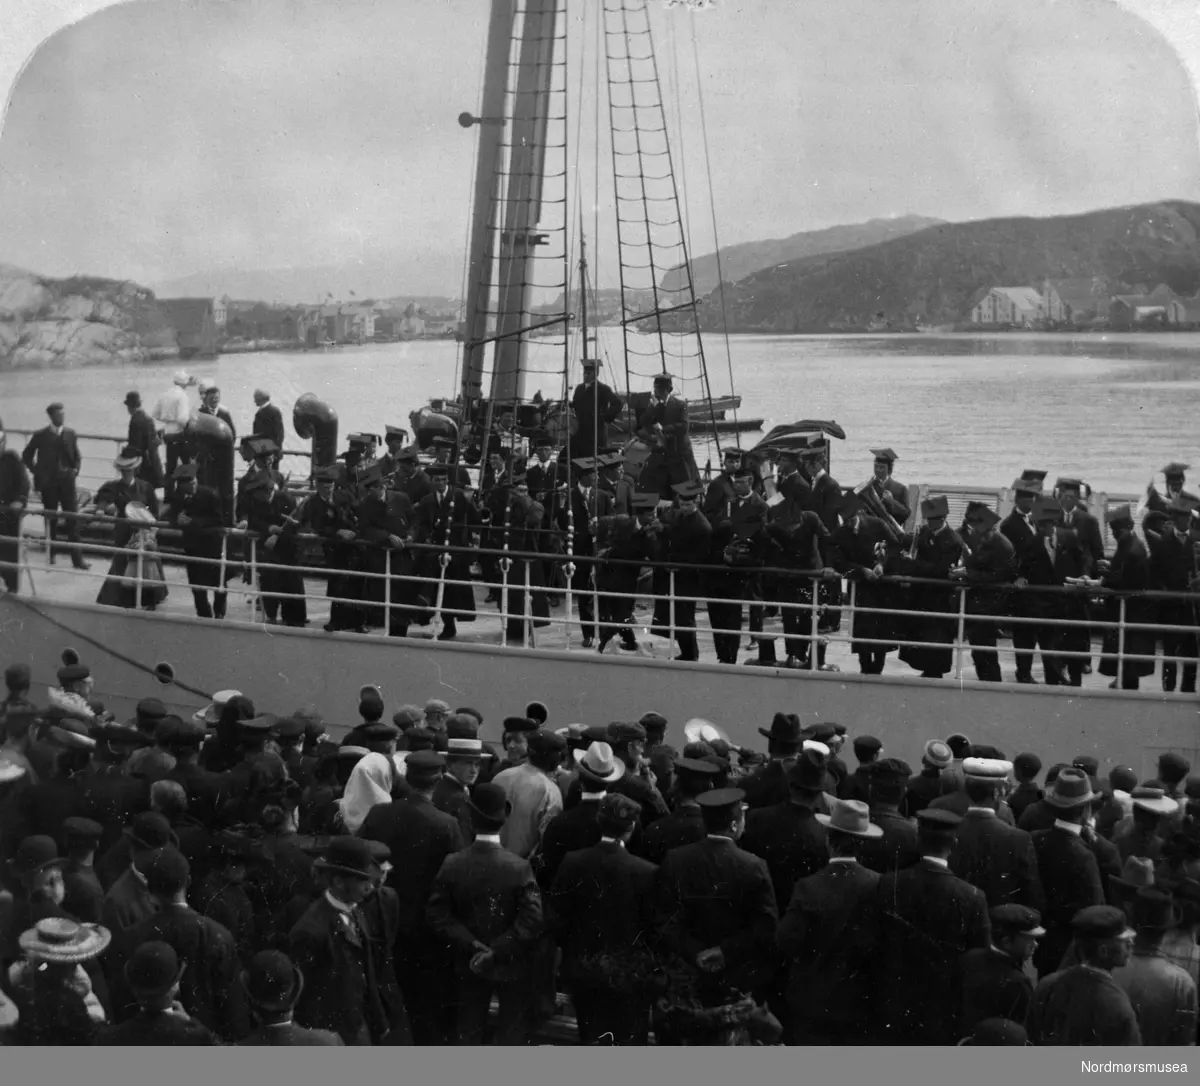 Fra en fotoserie som trolig viser fra mottakelsen av det som er skip med norsk-amerikanske studenters besøk til Kristiansund 11. juli 1906. Fra Nordmøre museums fotosamlinger.